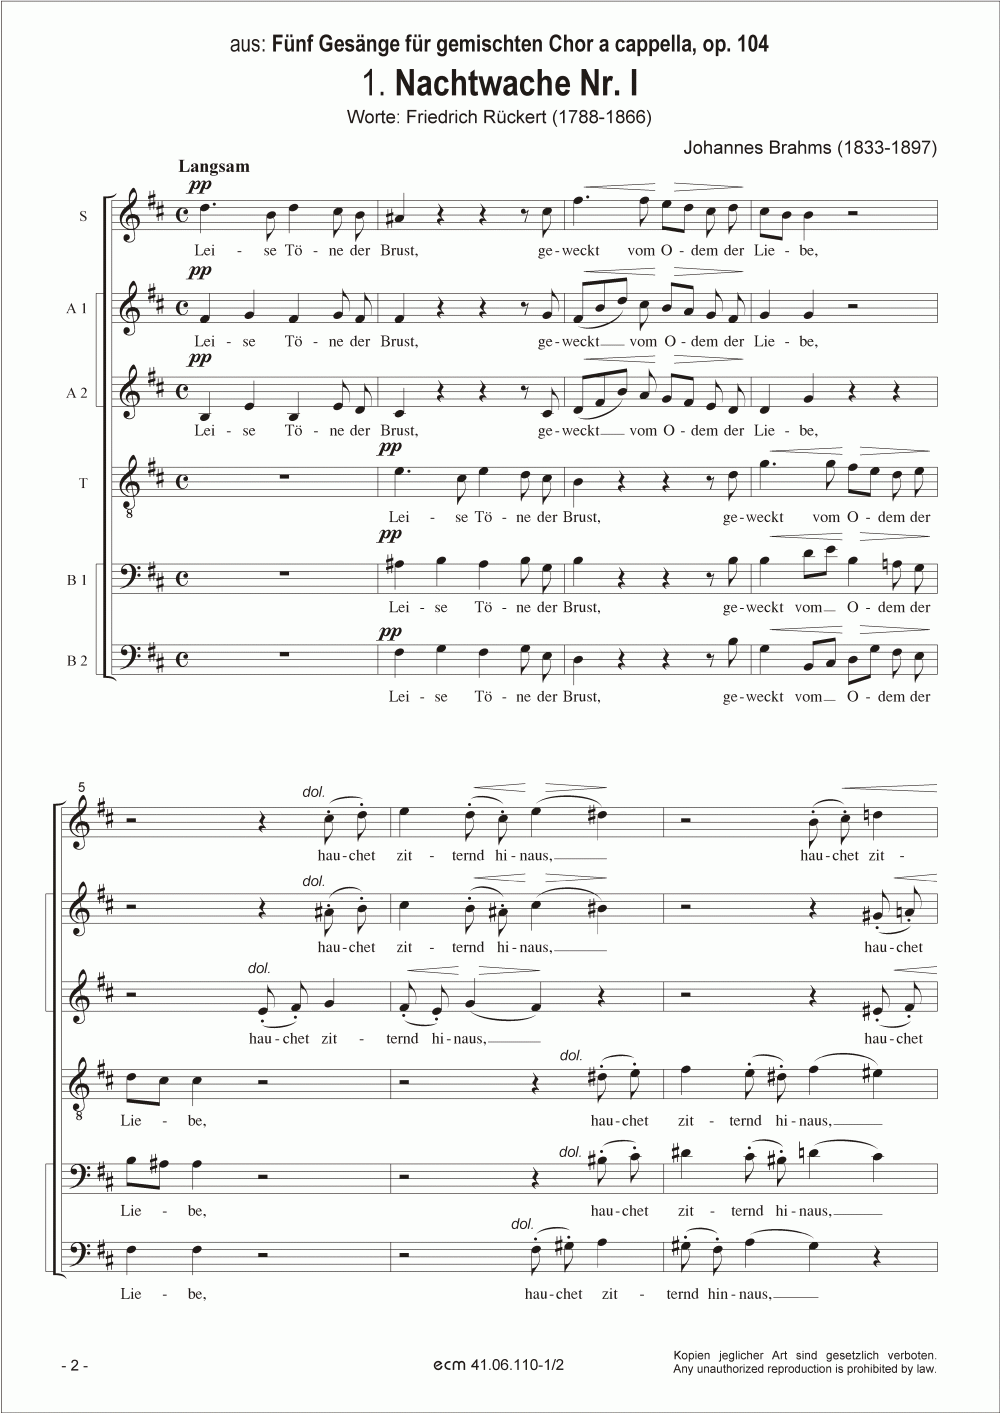 Nachtwache I und II (op. 104, Nr.1,2)